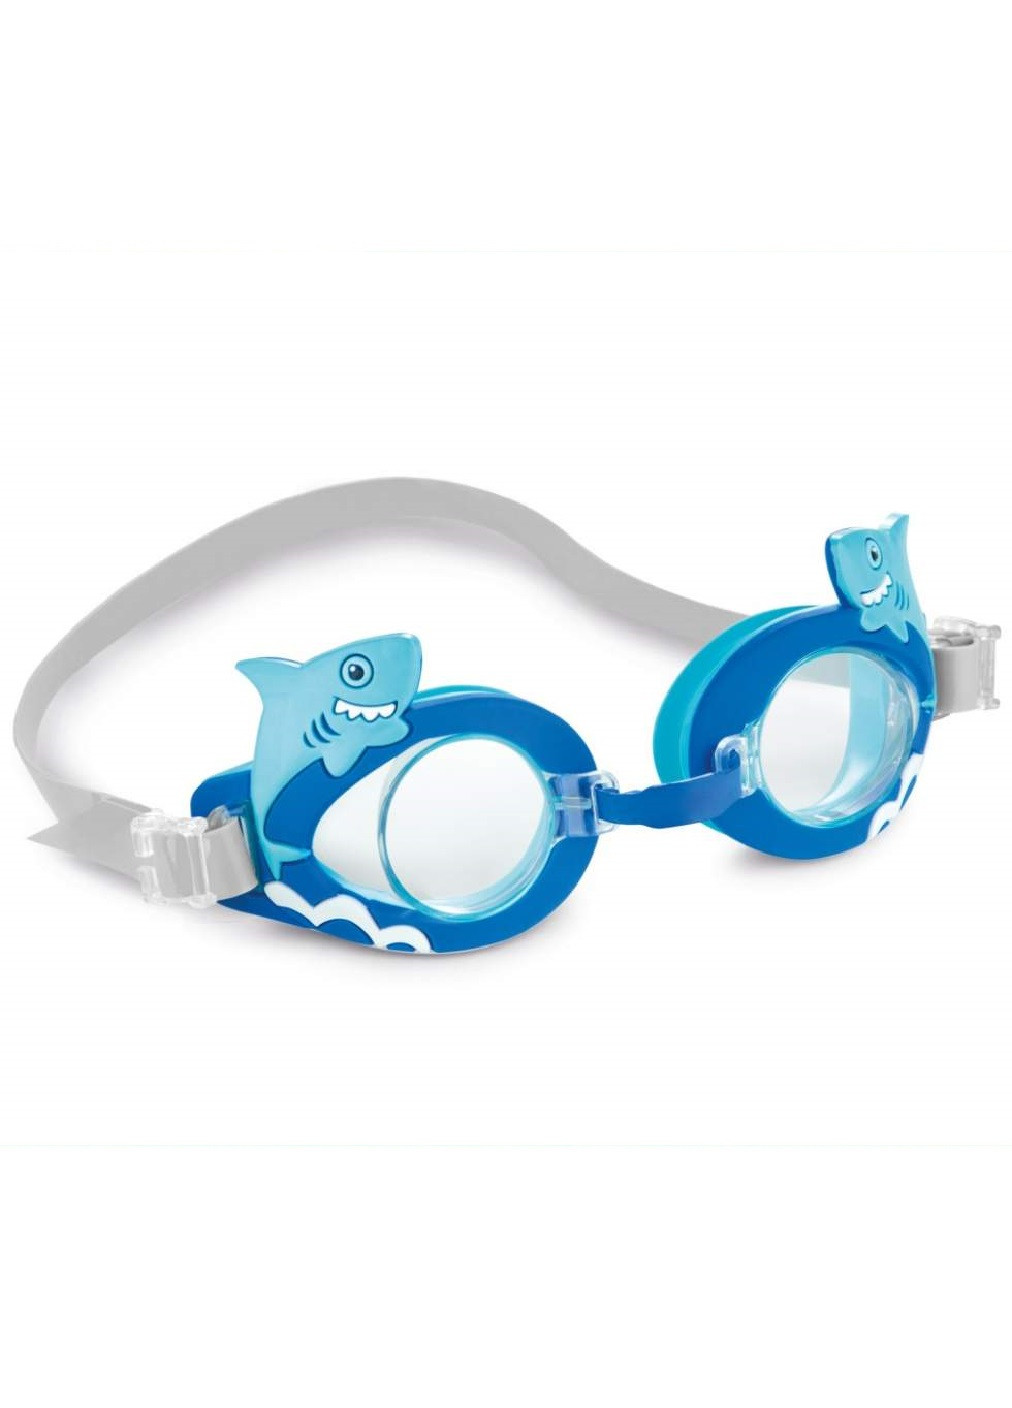 Очки для плавания детские для детей от 3 до 8 лет размер S с ярким дизайном защитой от ультрафиолета (474521-Prob) Акула Unbranded (258659151)